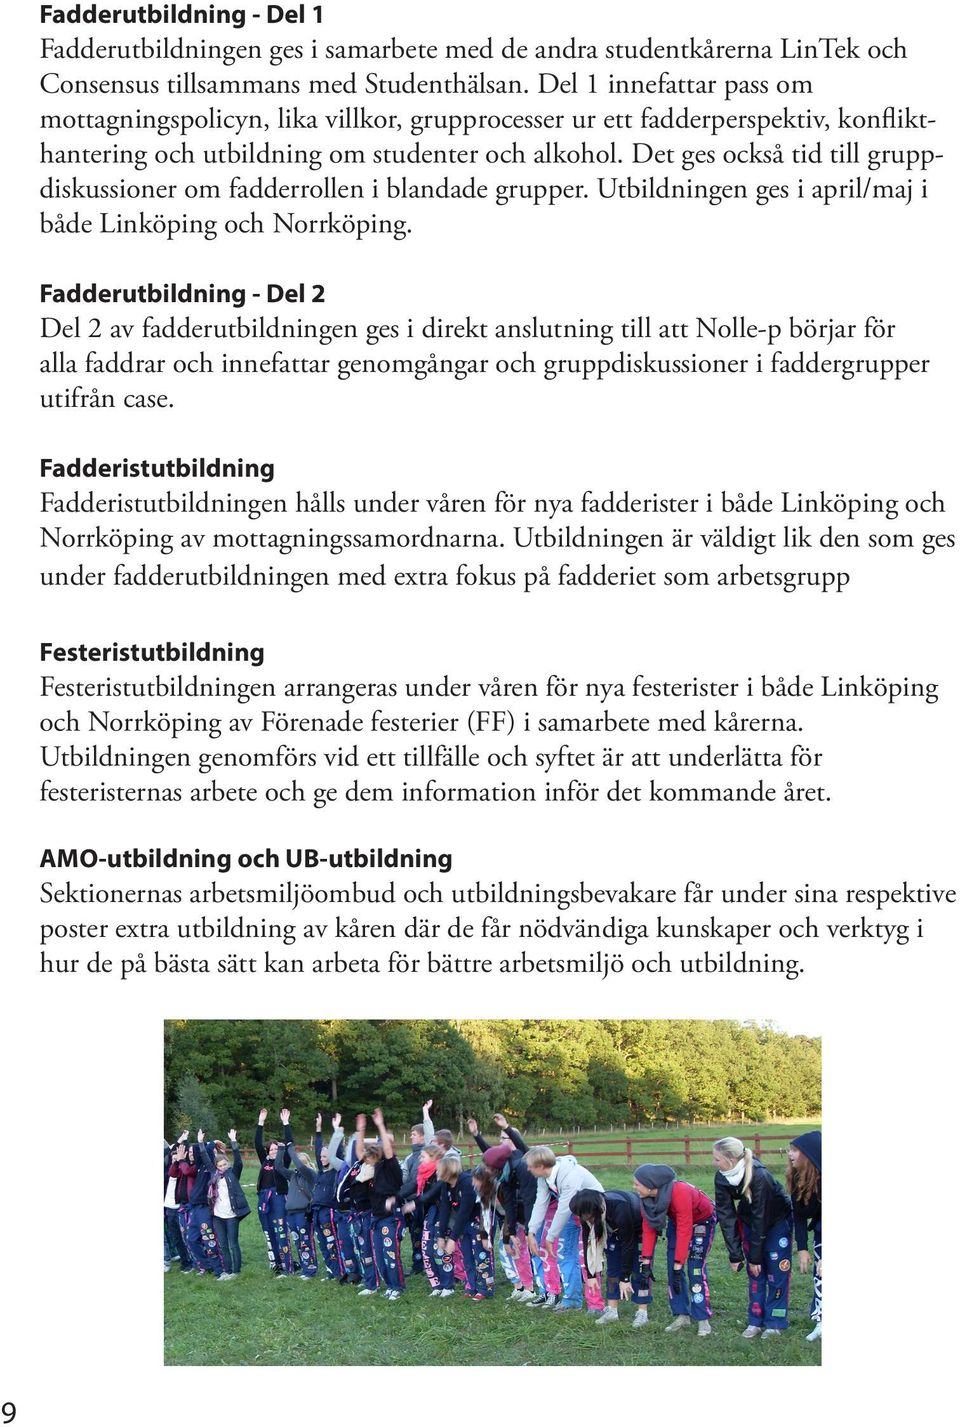 Det ges också tid till gruppdiskussioner om fadderrollen i blandade grupper. Utbildningen ges i april/maj i både Linköping och Norrköping.